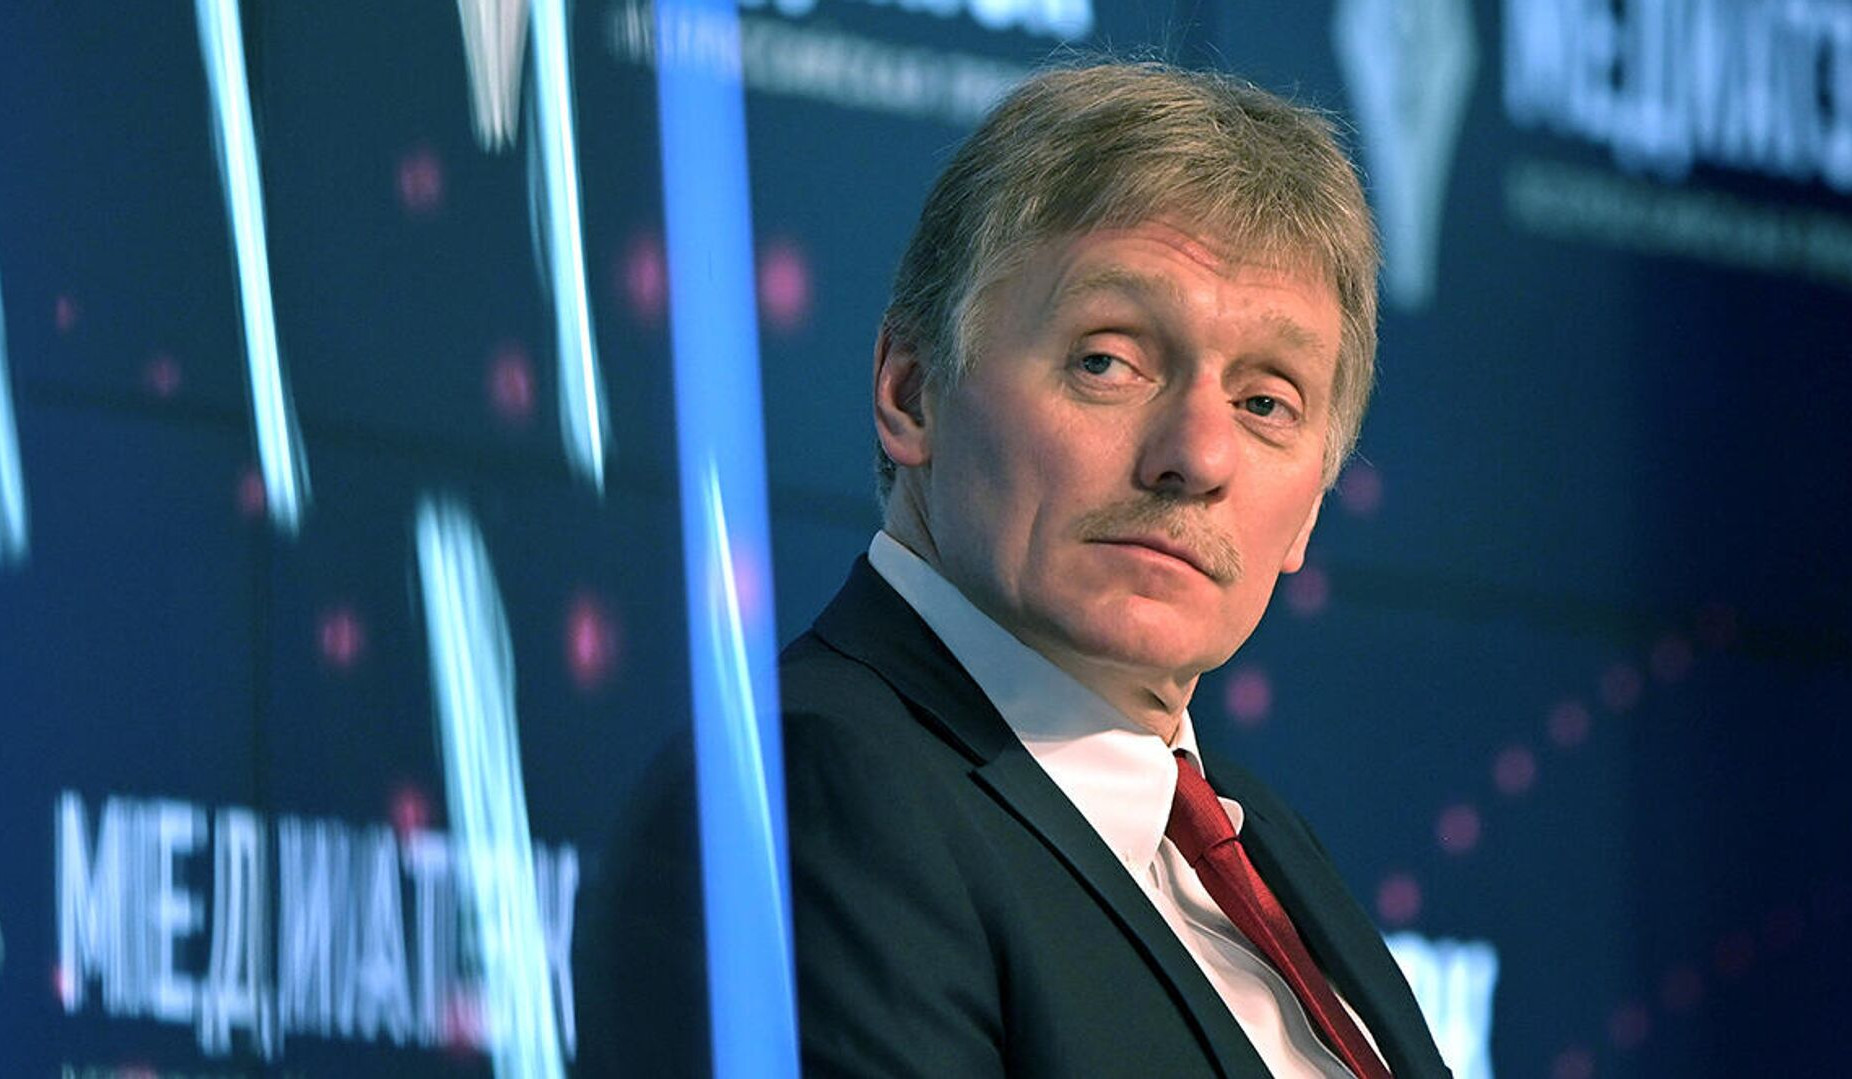 Ermənistanda gedən siyasi proseslər ölkənin daxili işidir: Peskov